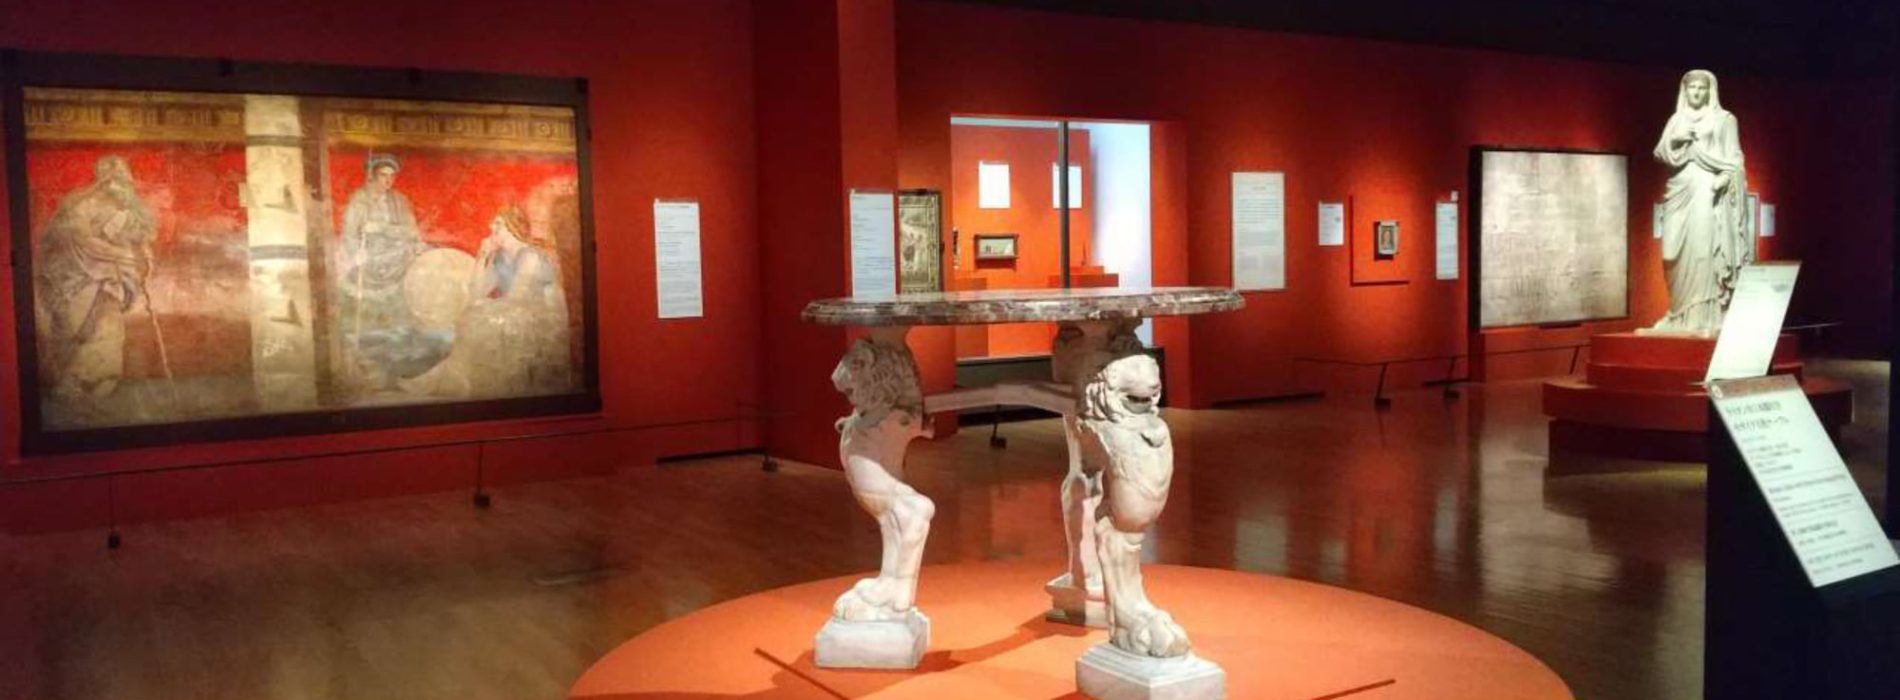 La mostra “Pompeii”, da Napoli al National Museum di Tokio